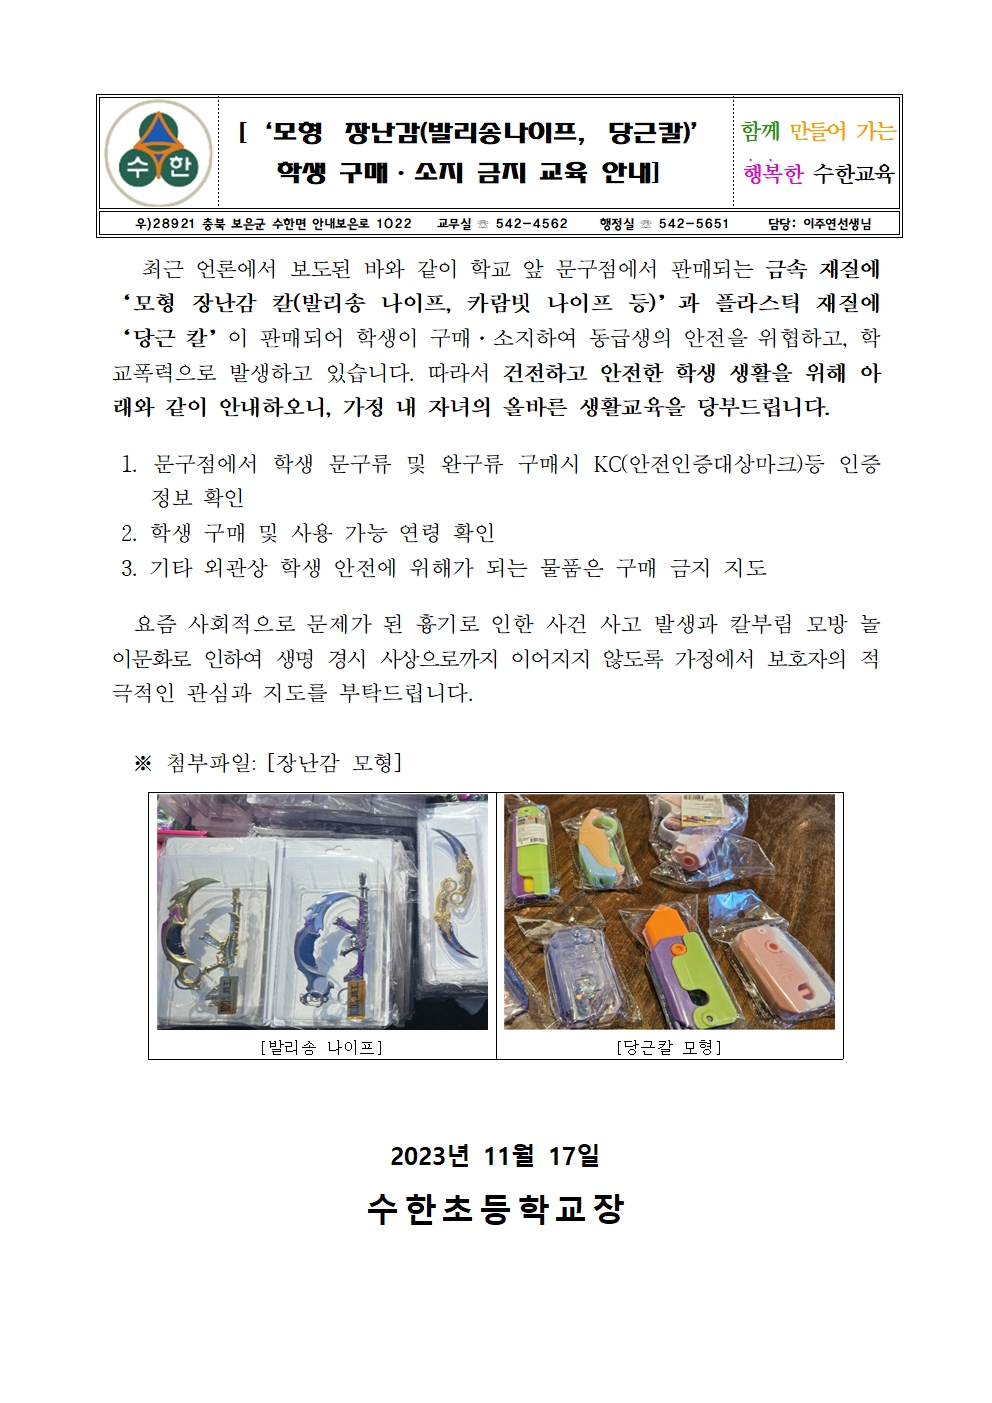 모형 장난감  학생 구매 소지 금지 교육 안내001